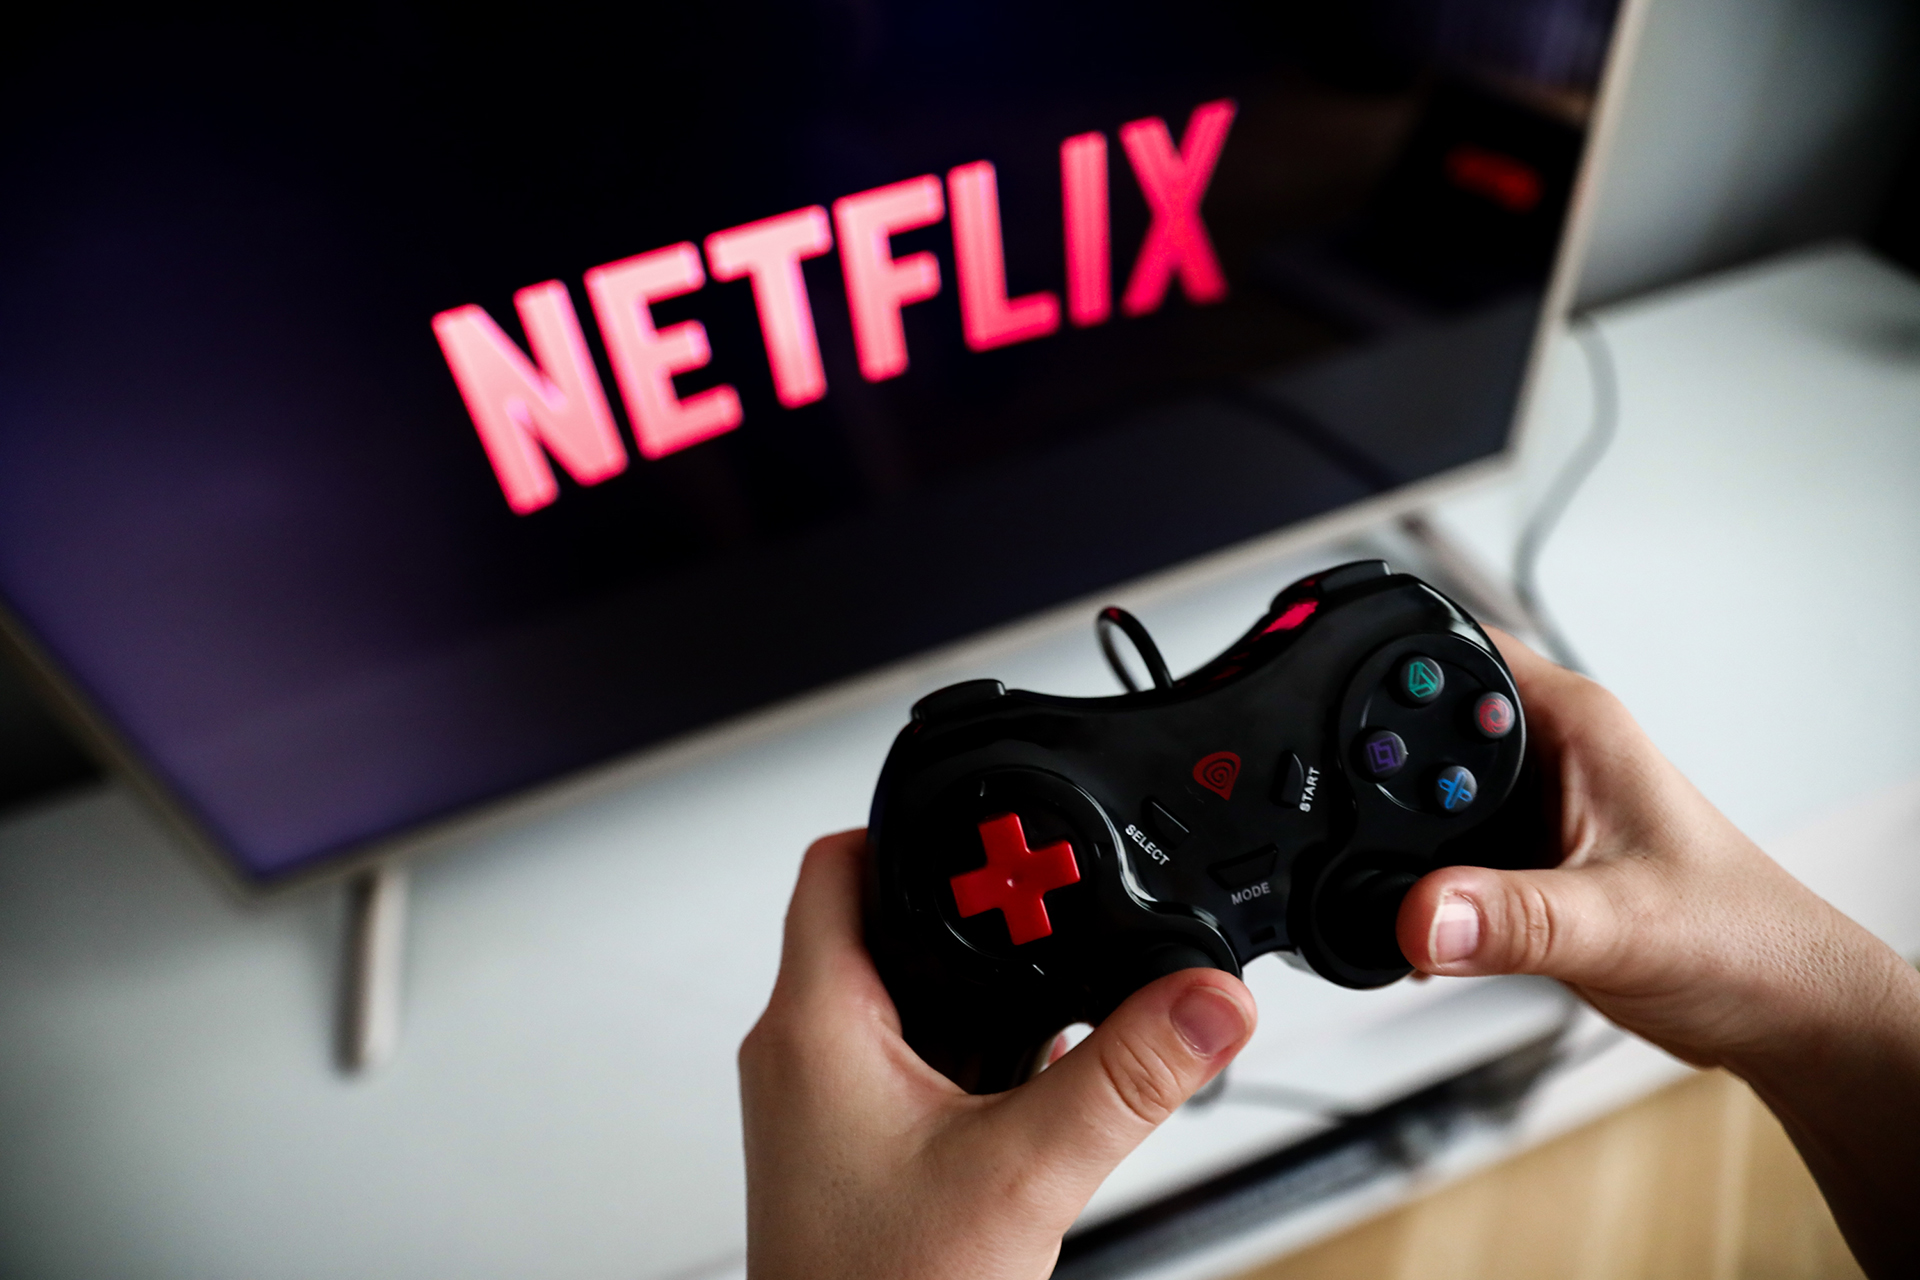 Netflix de jogos, Google Stadia chega em novembro com preço alto